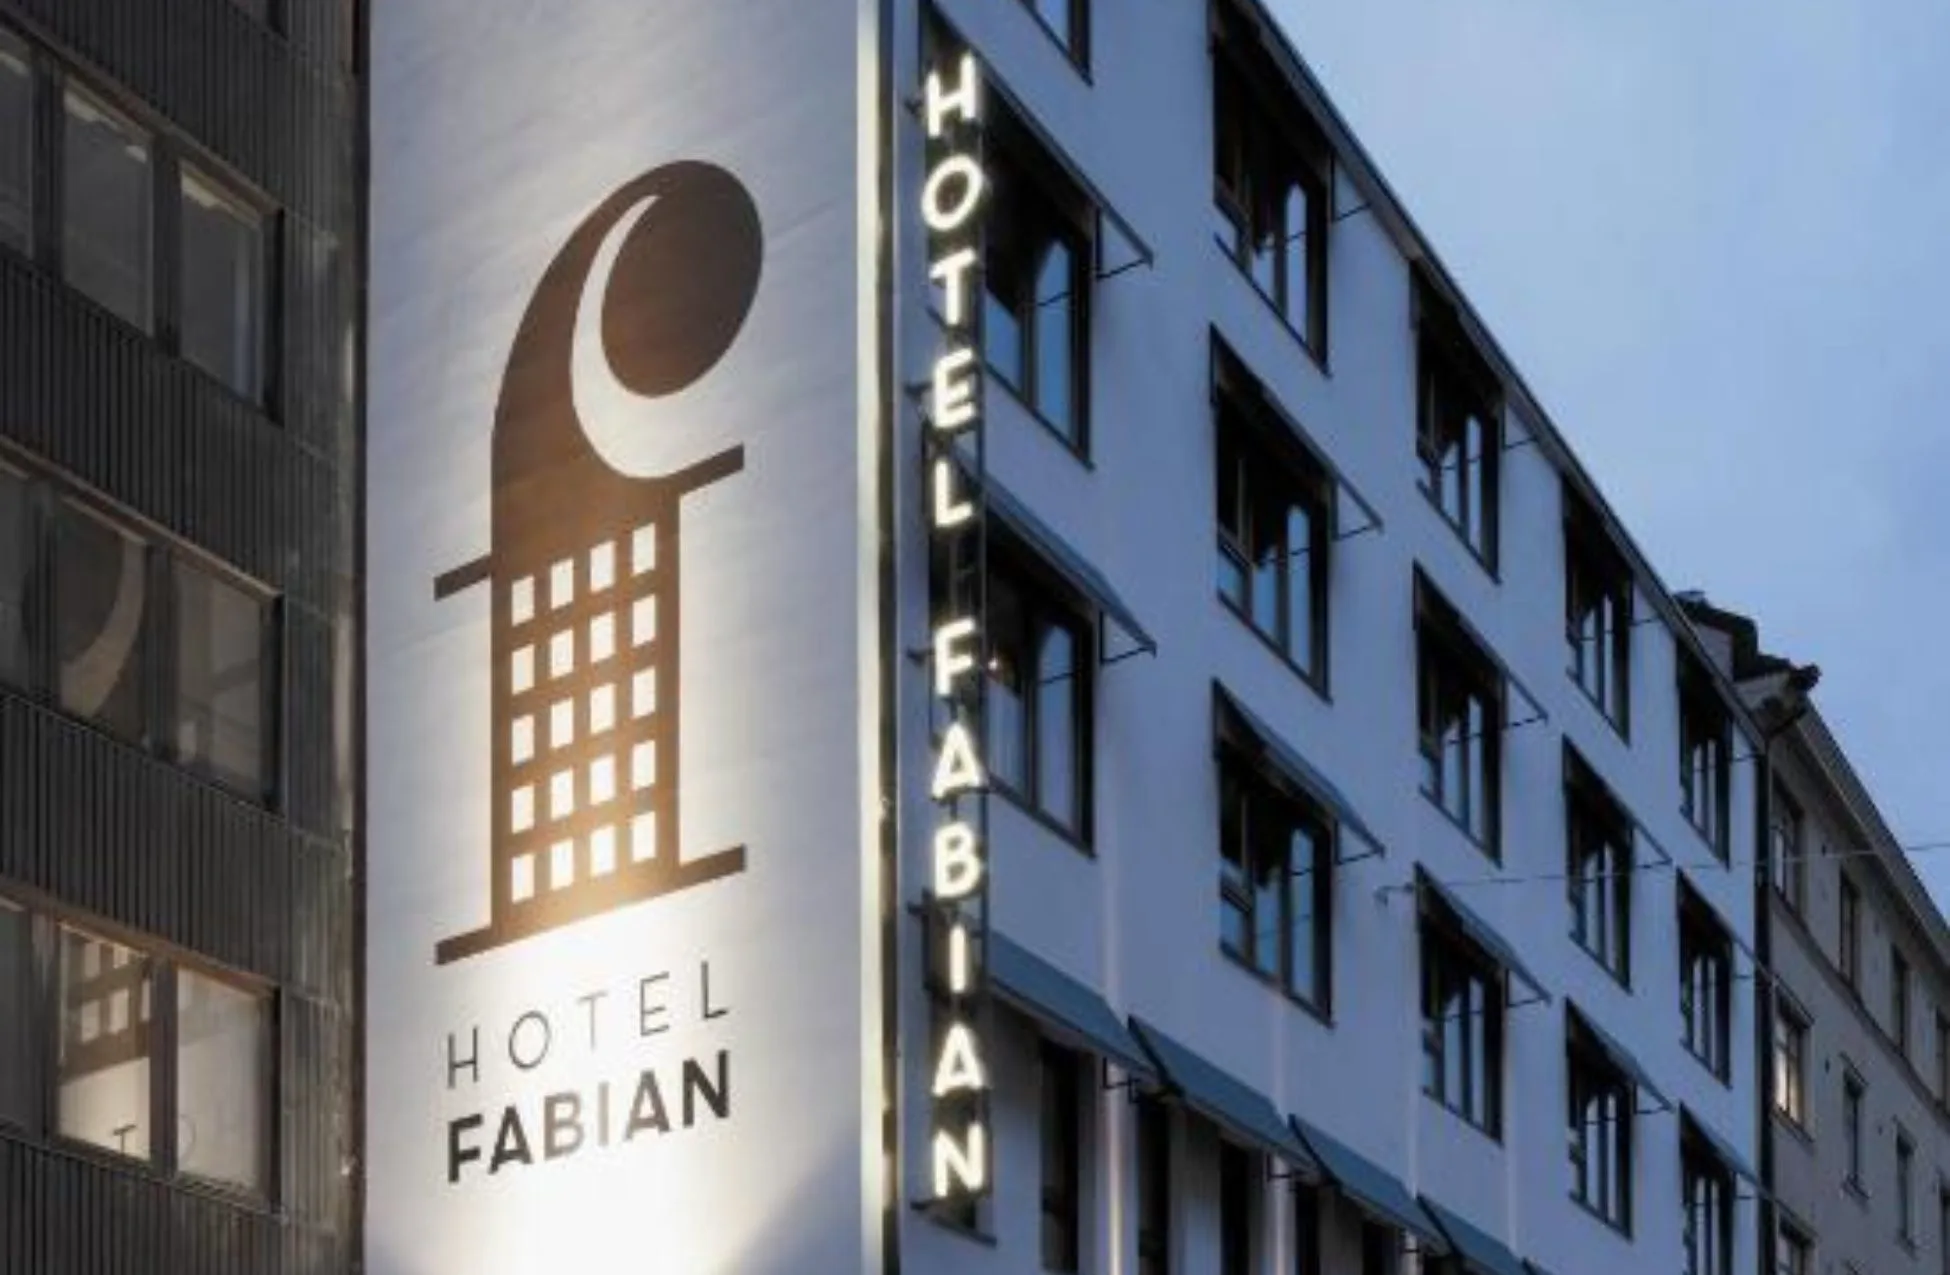 Hotel Fabian - Best Hotels In Finland